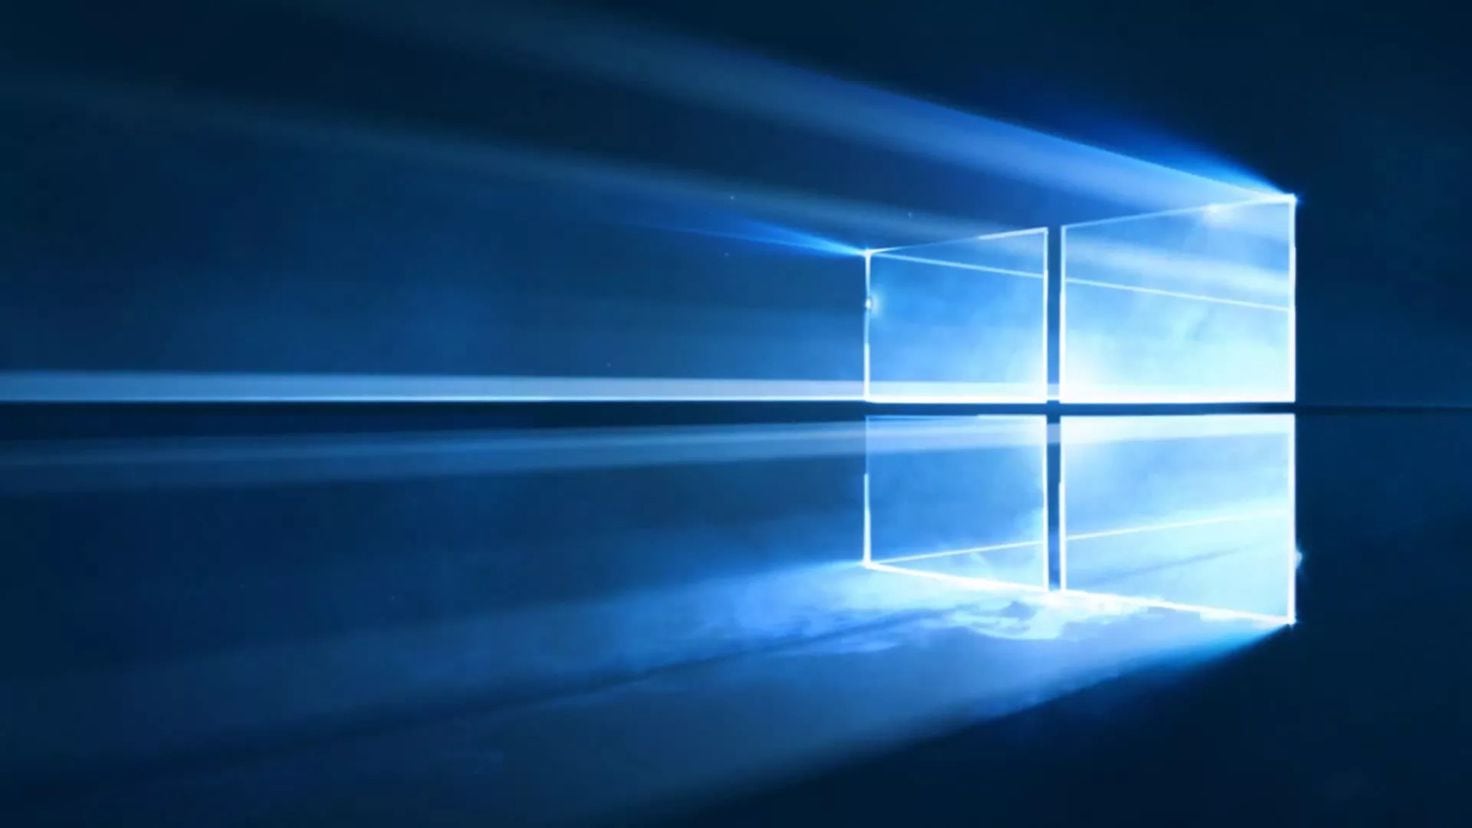 Windows 10 pone fecha de cierre y si quieres seguir usándolo tendrás que pagar por actualizaciones de seguridad